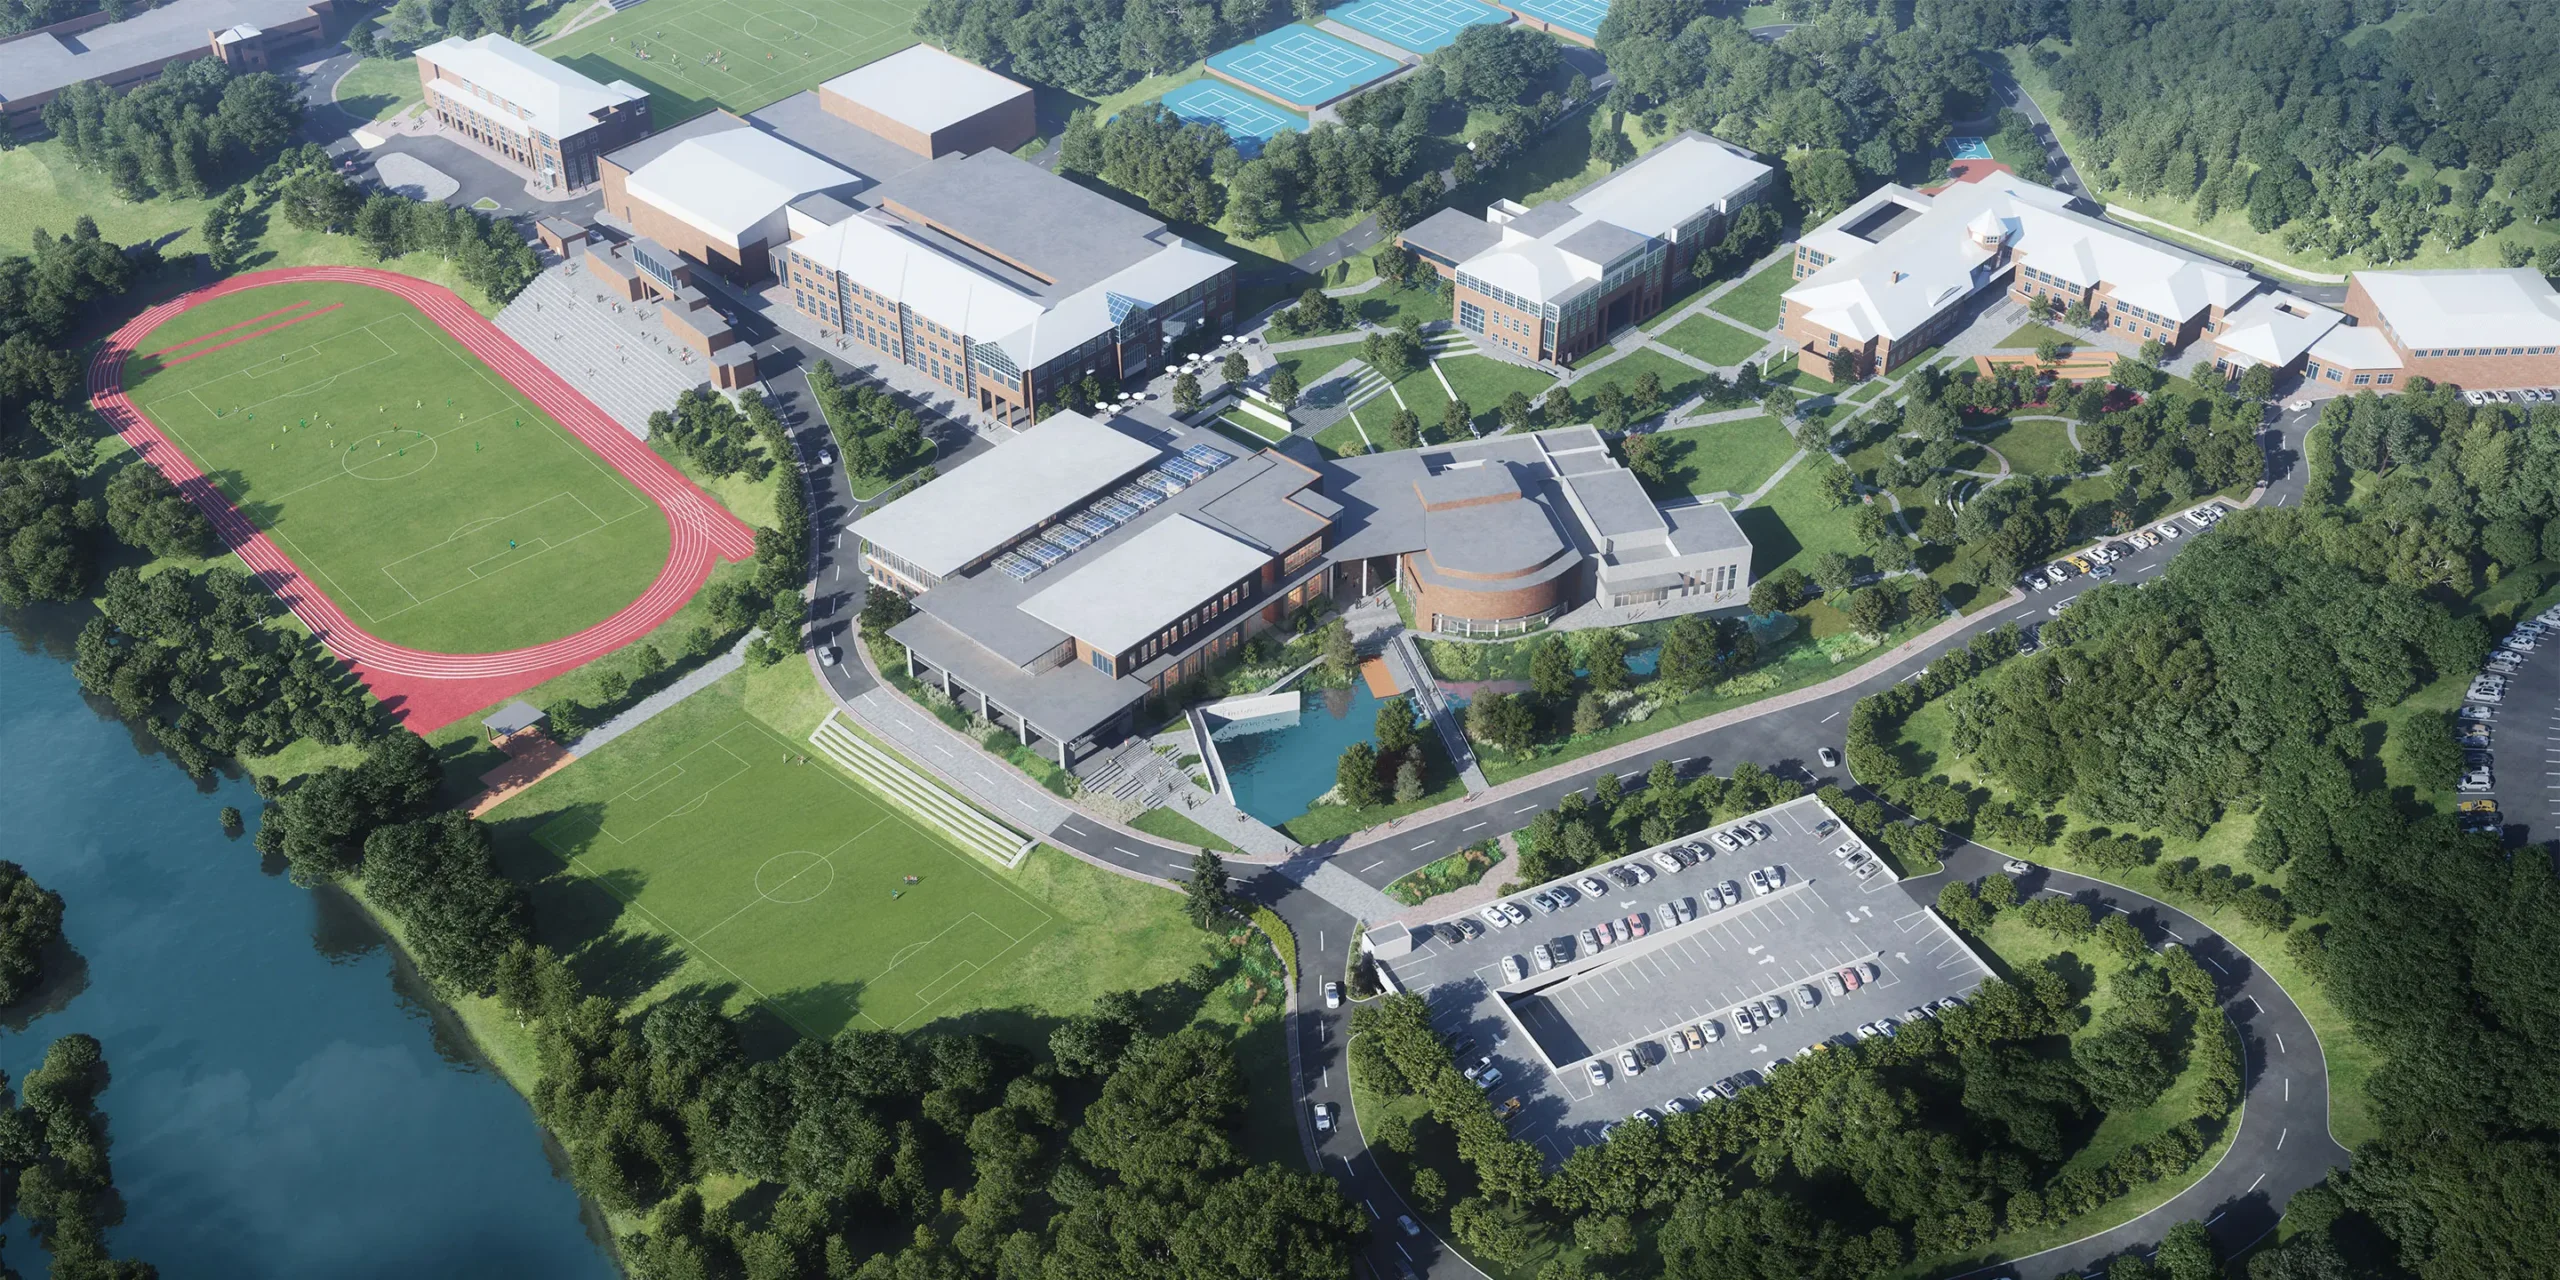 The Lovett School Campus Plan